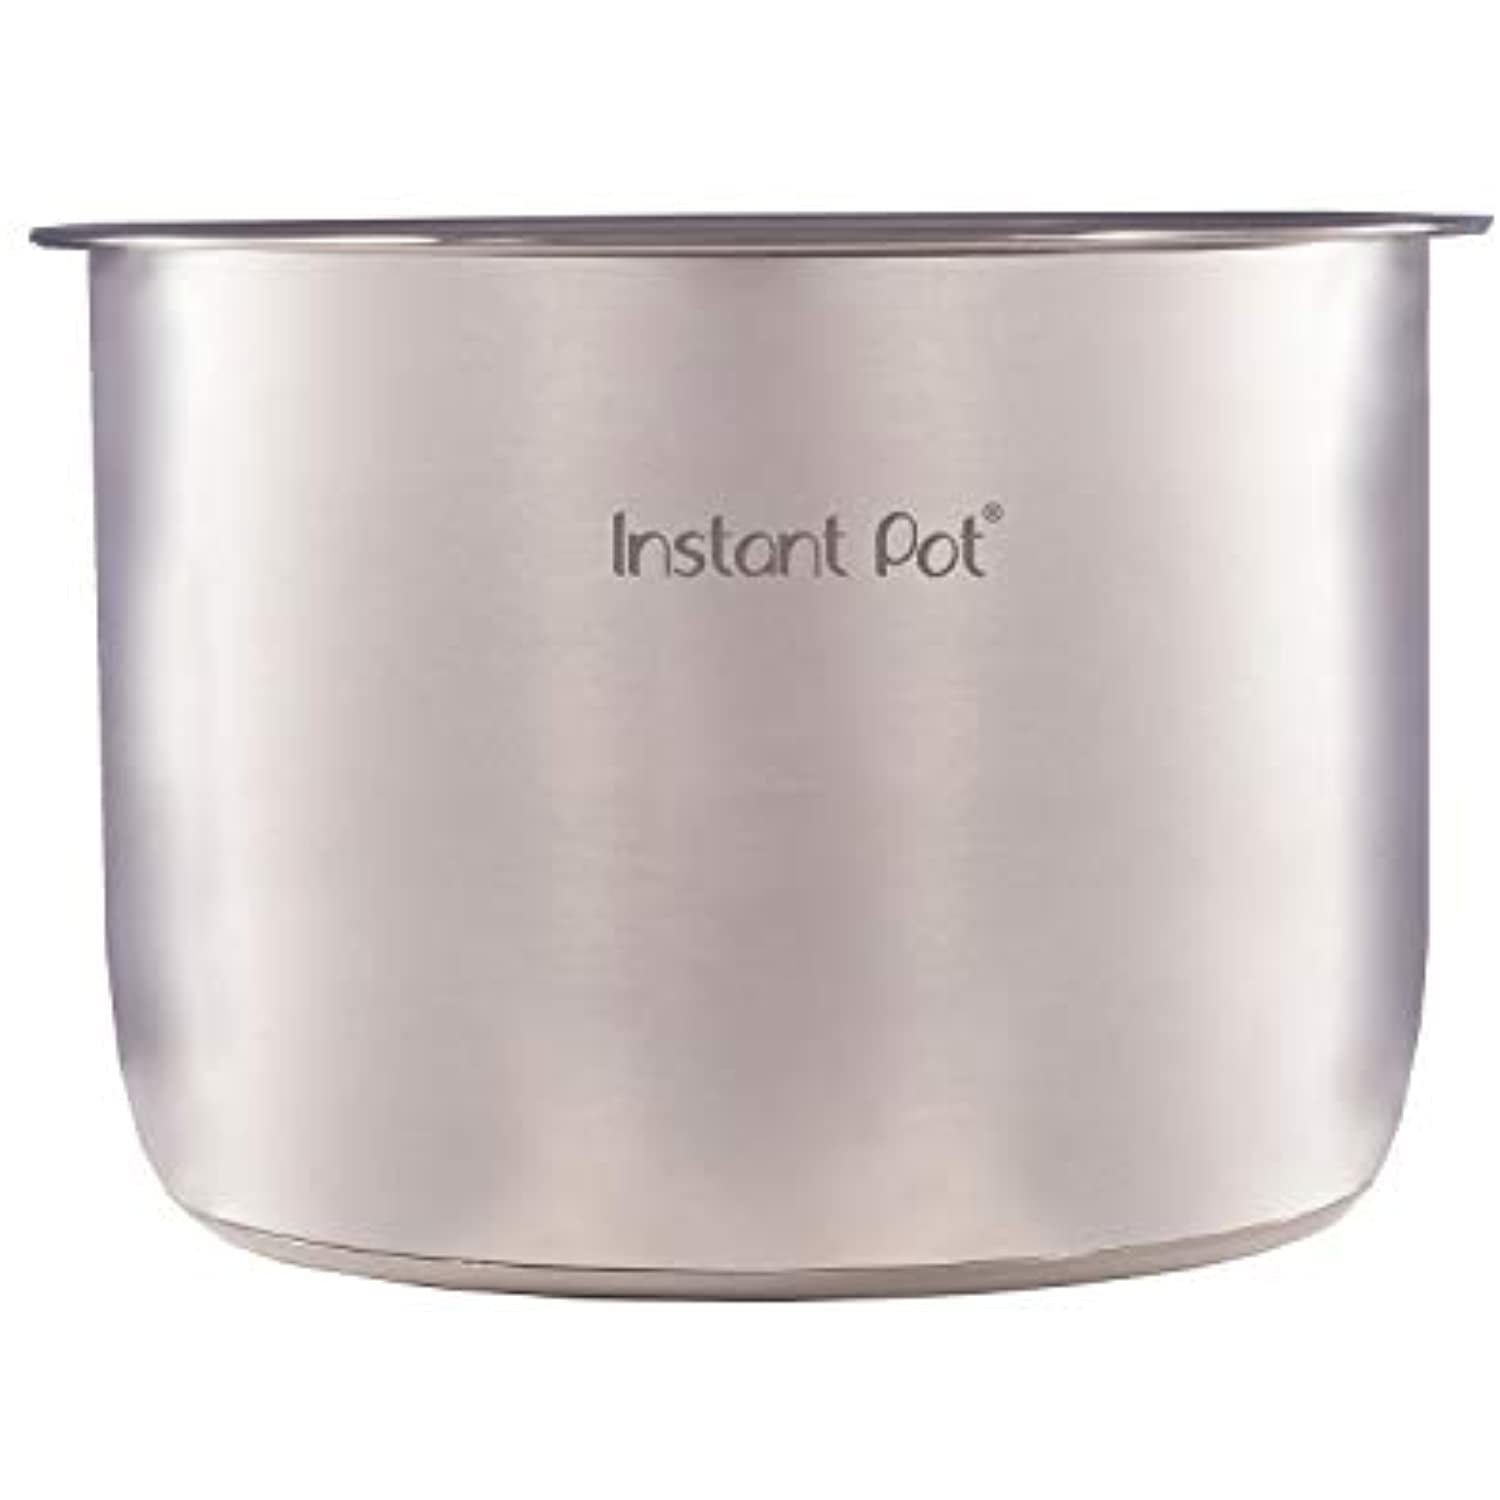  Genuine Inner Pot for Instant Pot 6 Qt Pot for